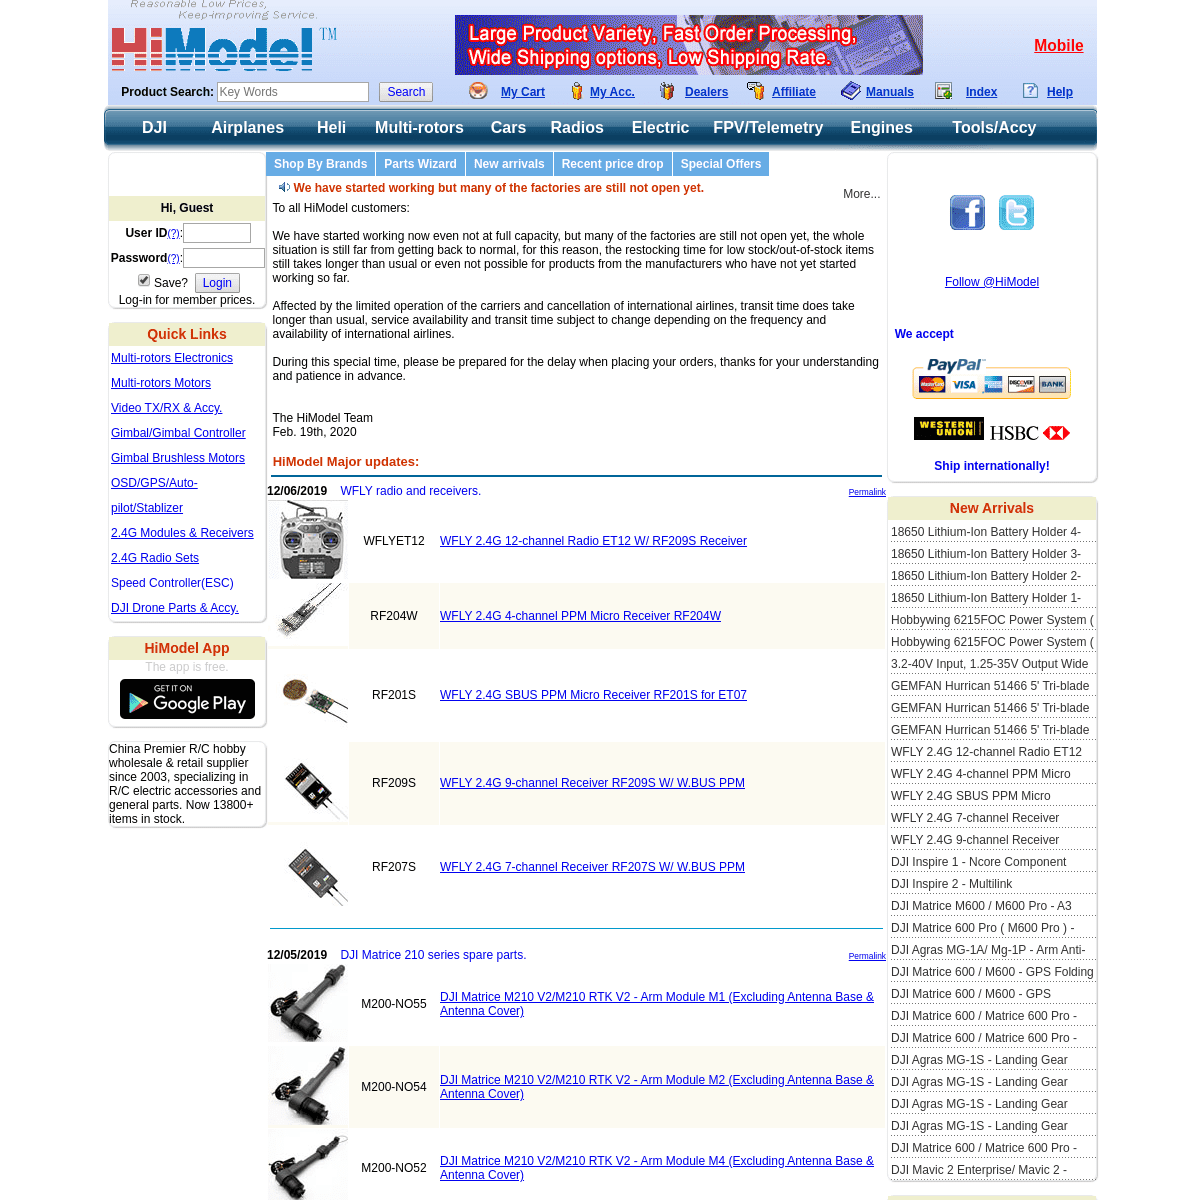 A complete backup of himodel.com